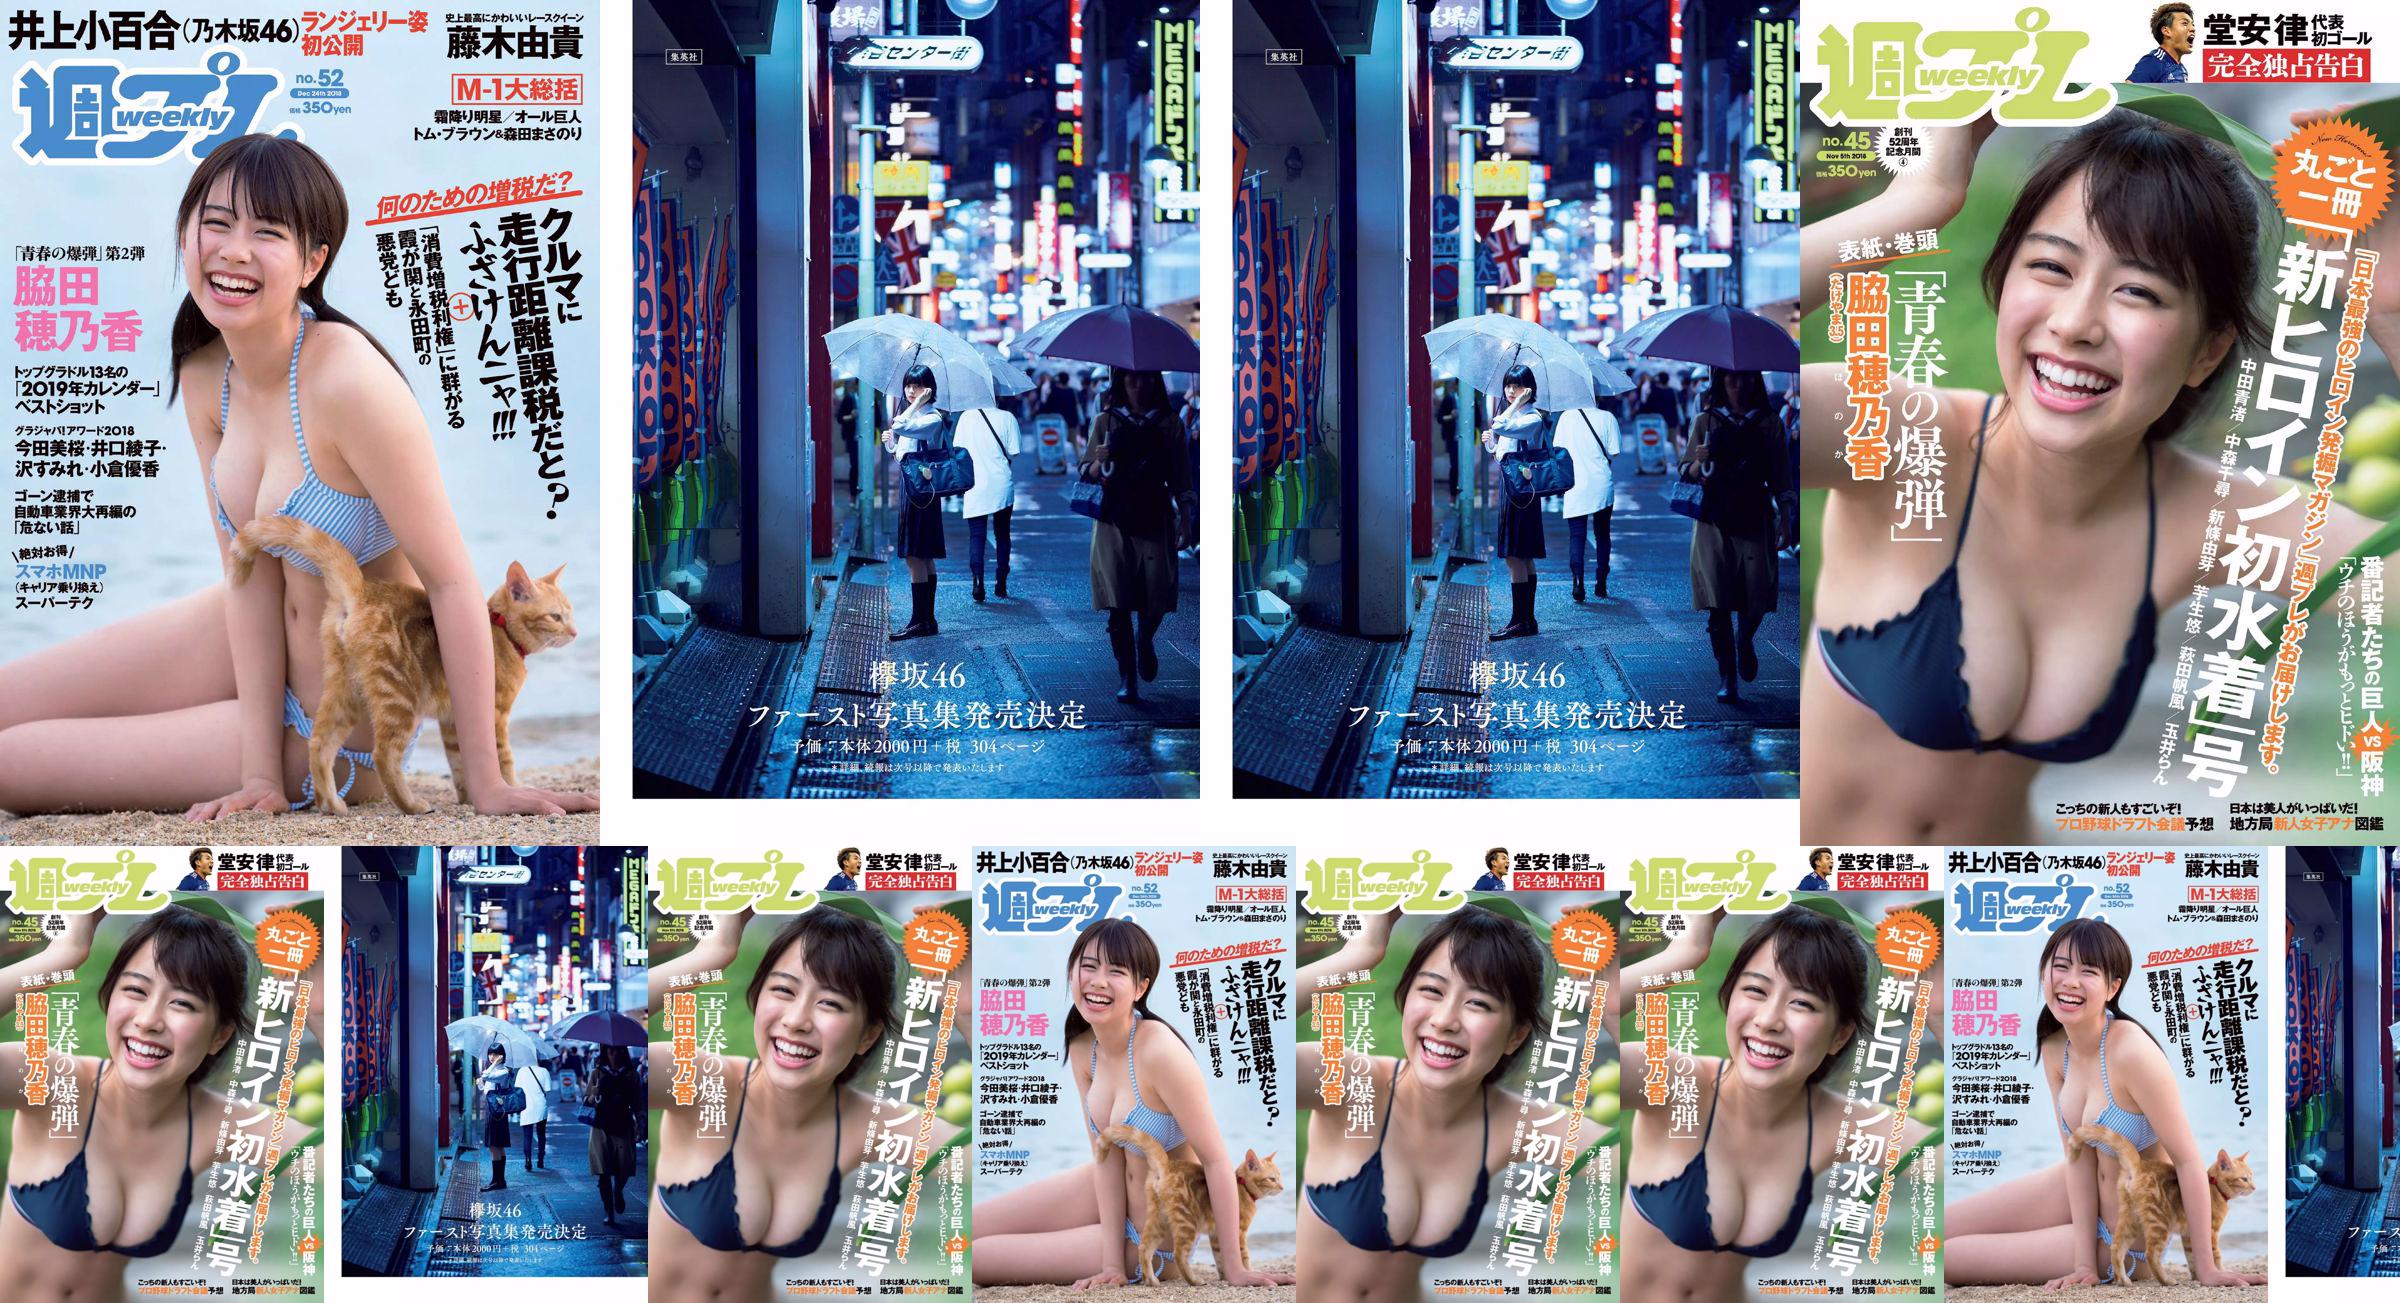 Wakada Honoka, Inoue Sayuri, Mizusawa Yuno, Fujiki Yuki, Koizumi Haruka, Kaito みらい, Tachiki Ayano [Weekly Playboy] 2018 No.52 Photo Magazine No.a7e10c Pagina 1